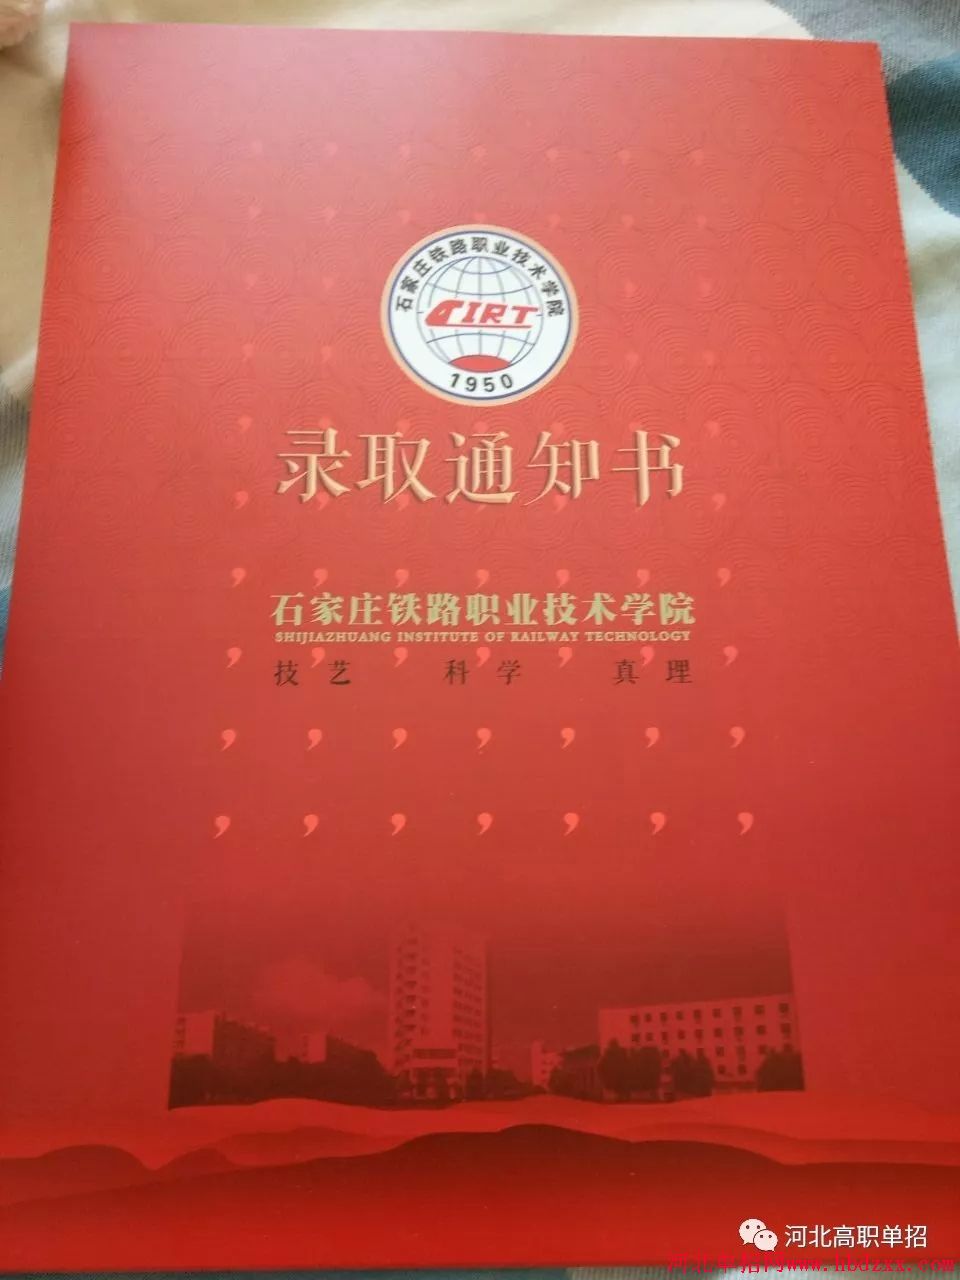 石家庄铁路职业技术学院2018年单招录取通知书 图2